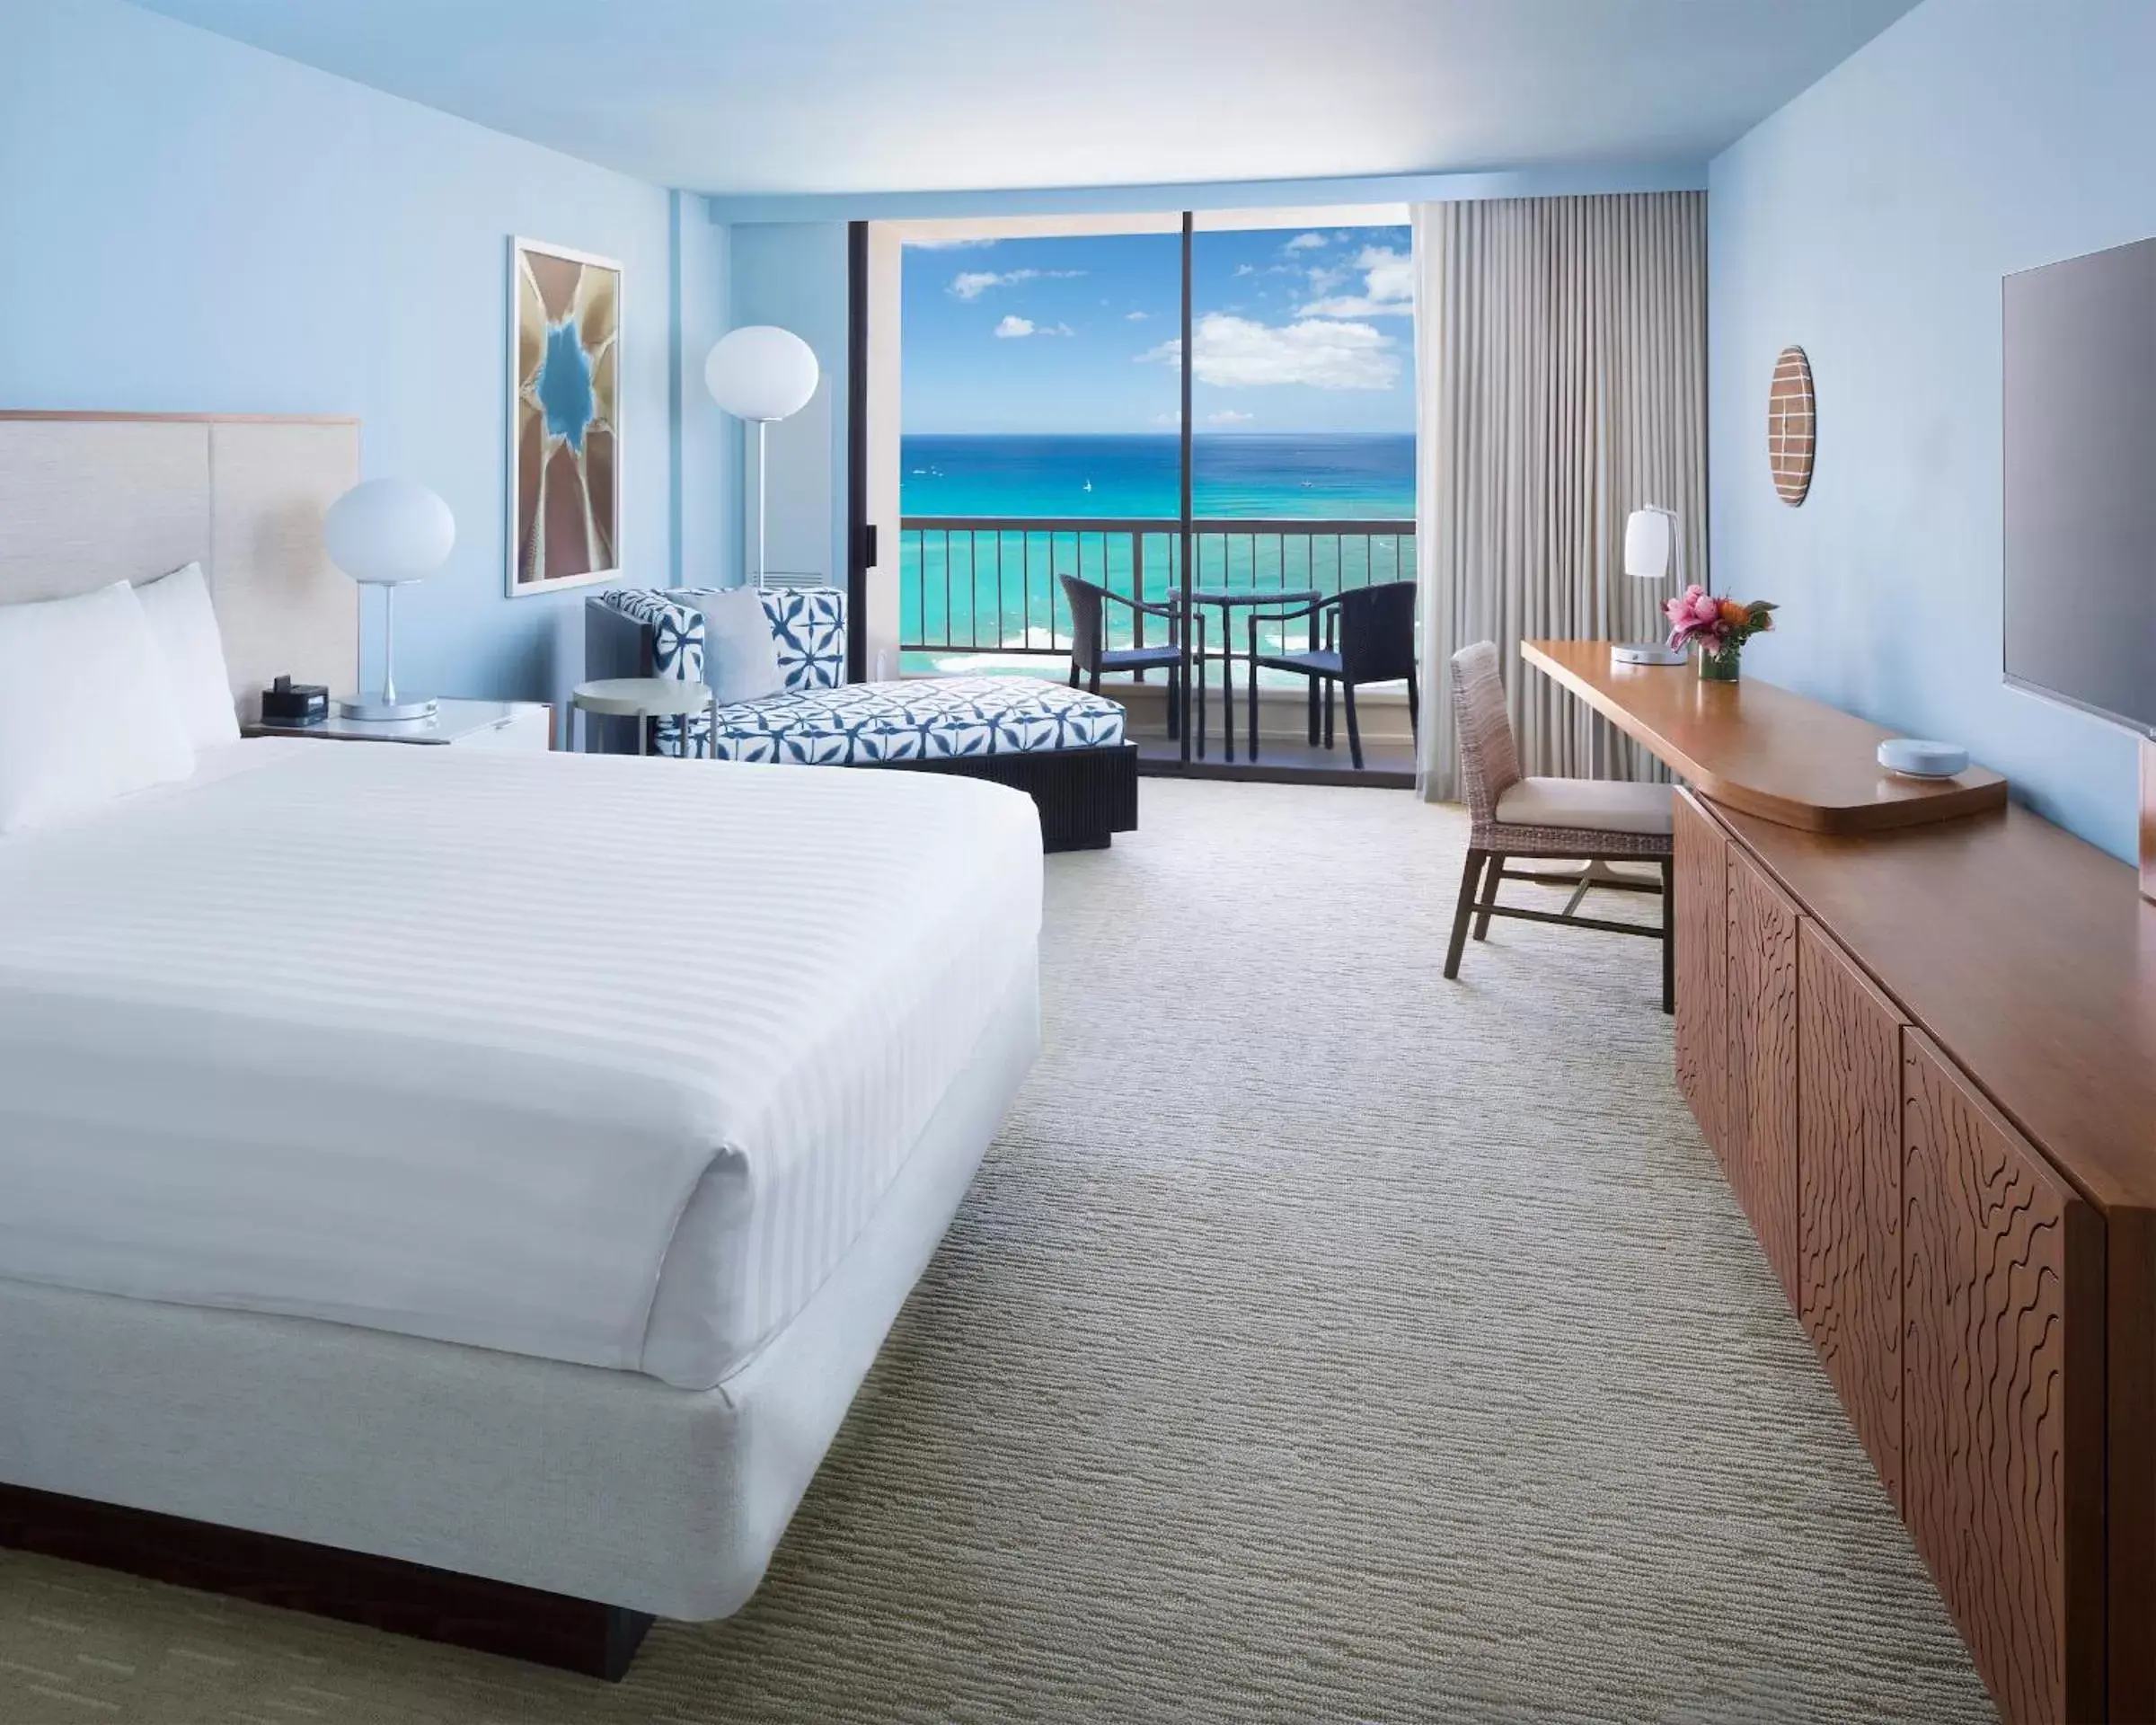 King Room with Ocean View in Hyatt Regency Waikiki Beach Resort & Spa